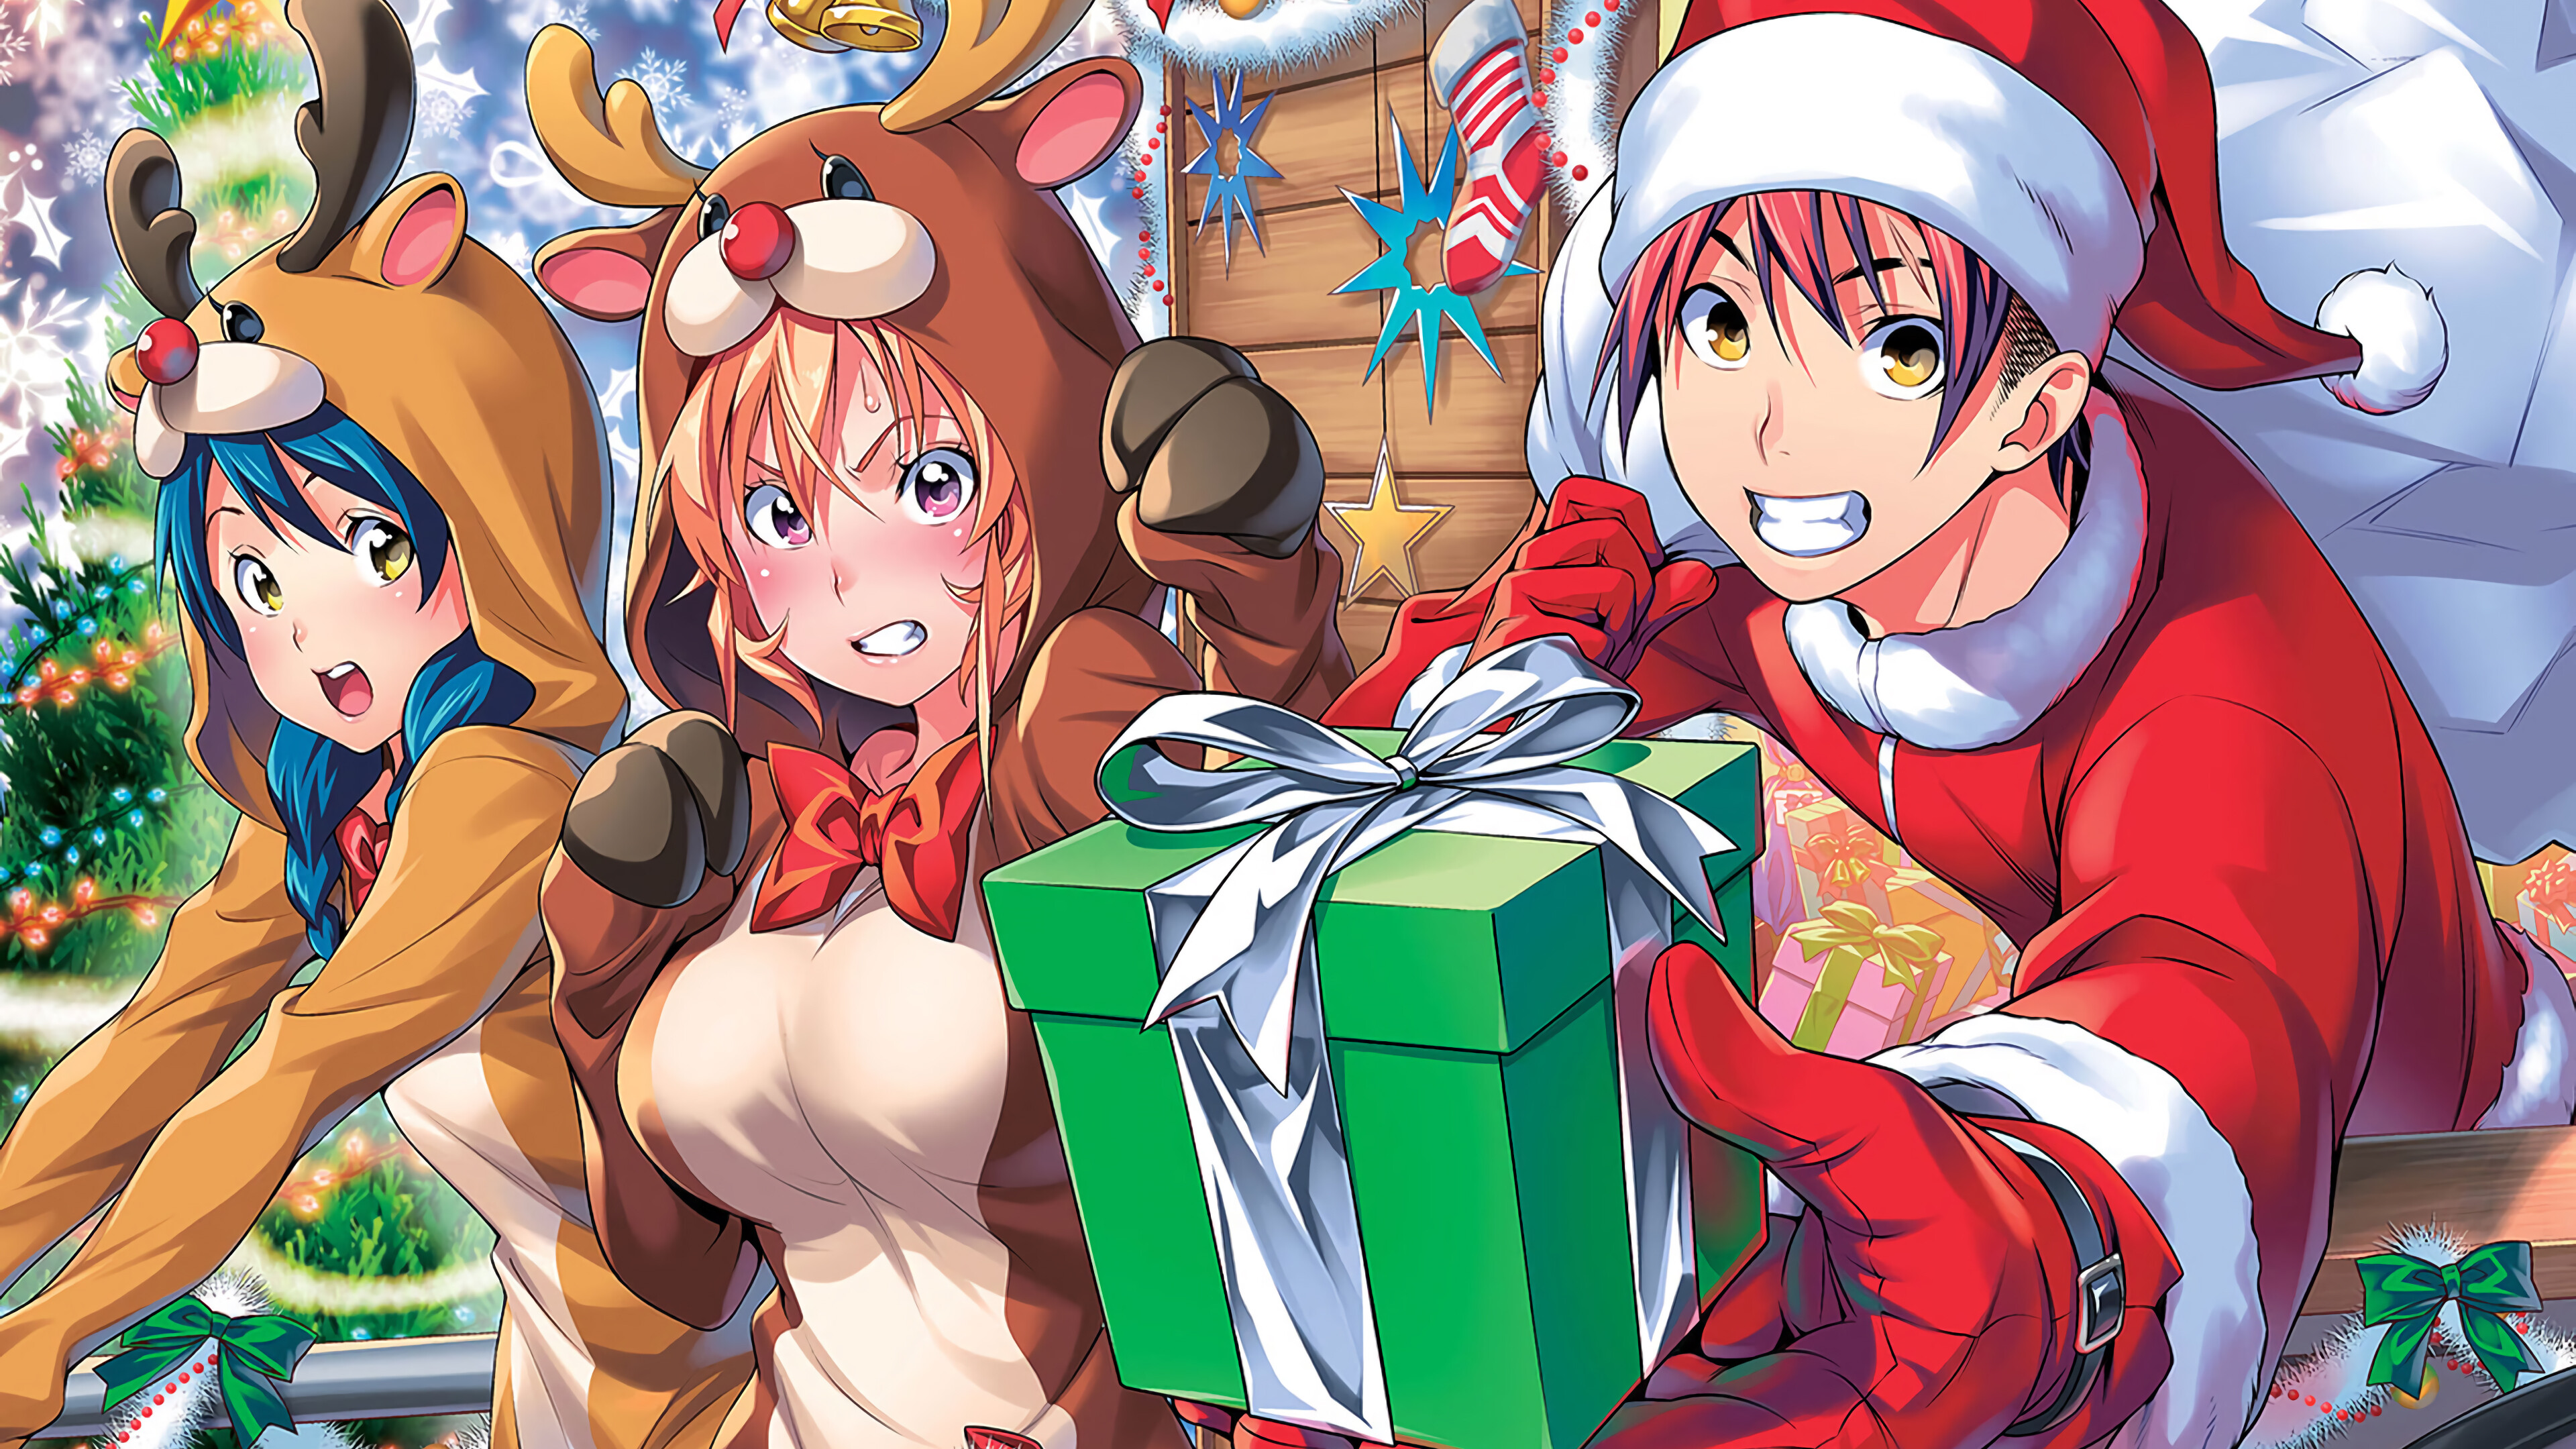 Food Wars! Shokugeki no Soma at Christmas Anime Wallpaper 4k Ultra HD  ID:4164